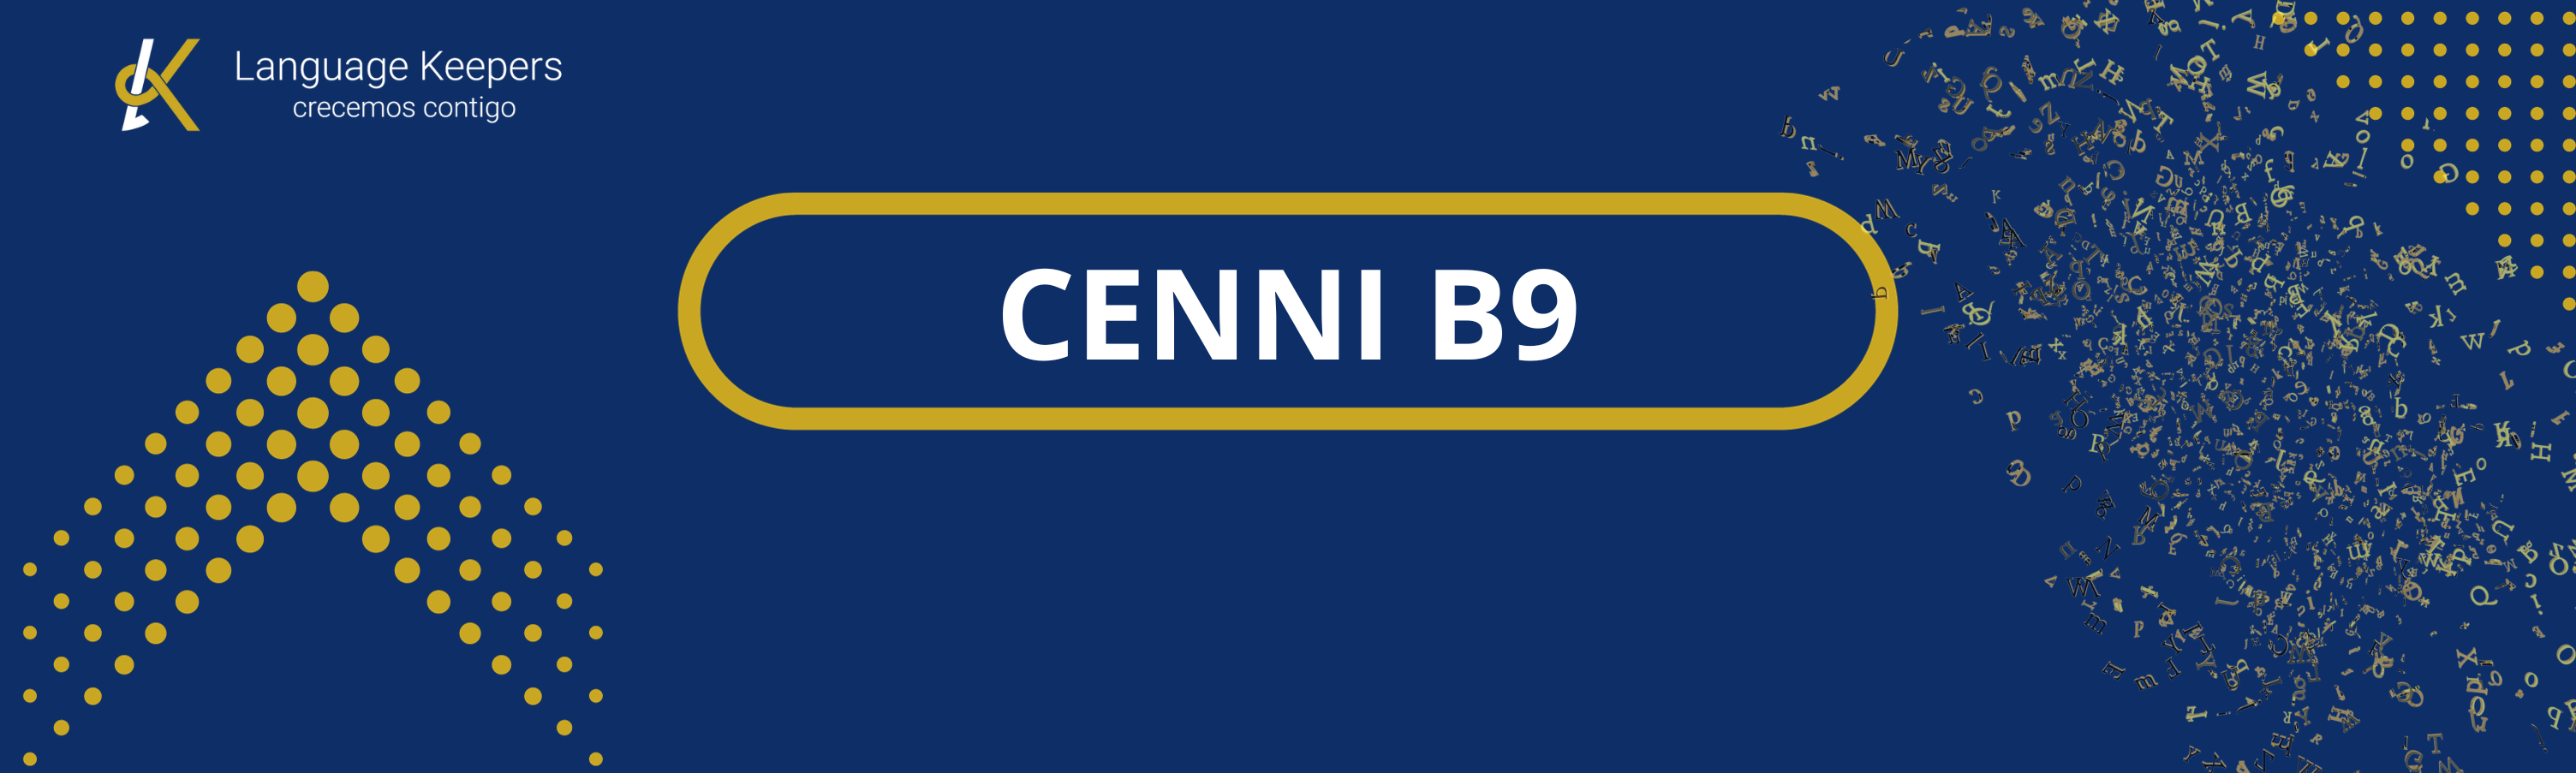 CENNI B9